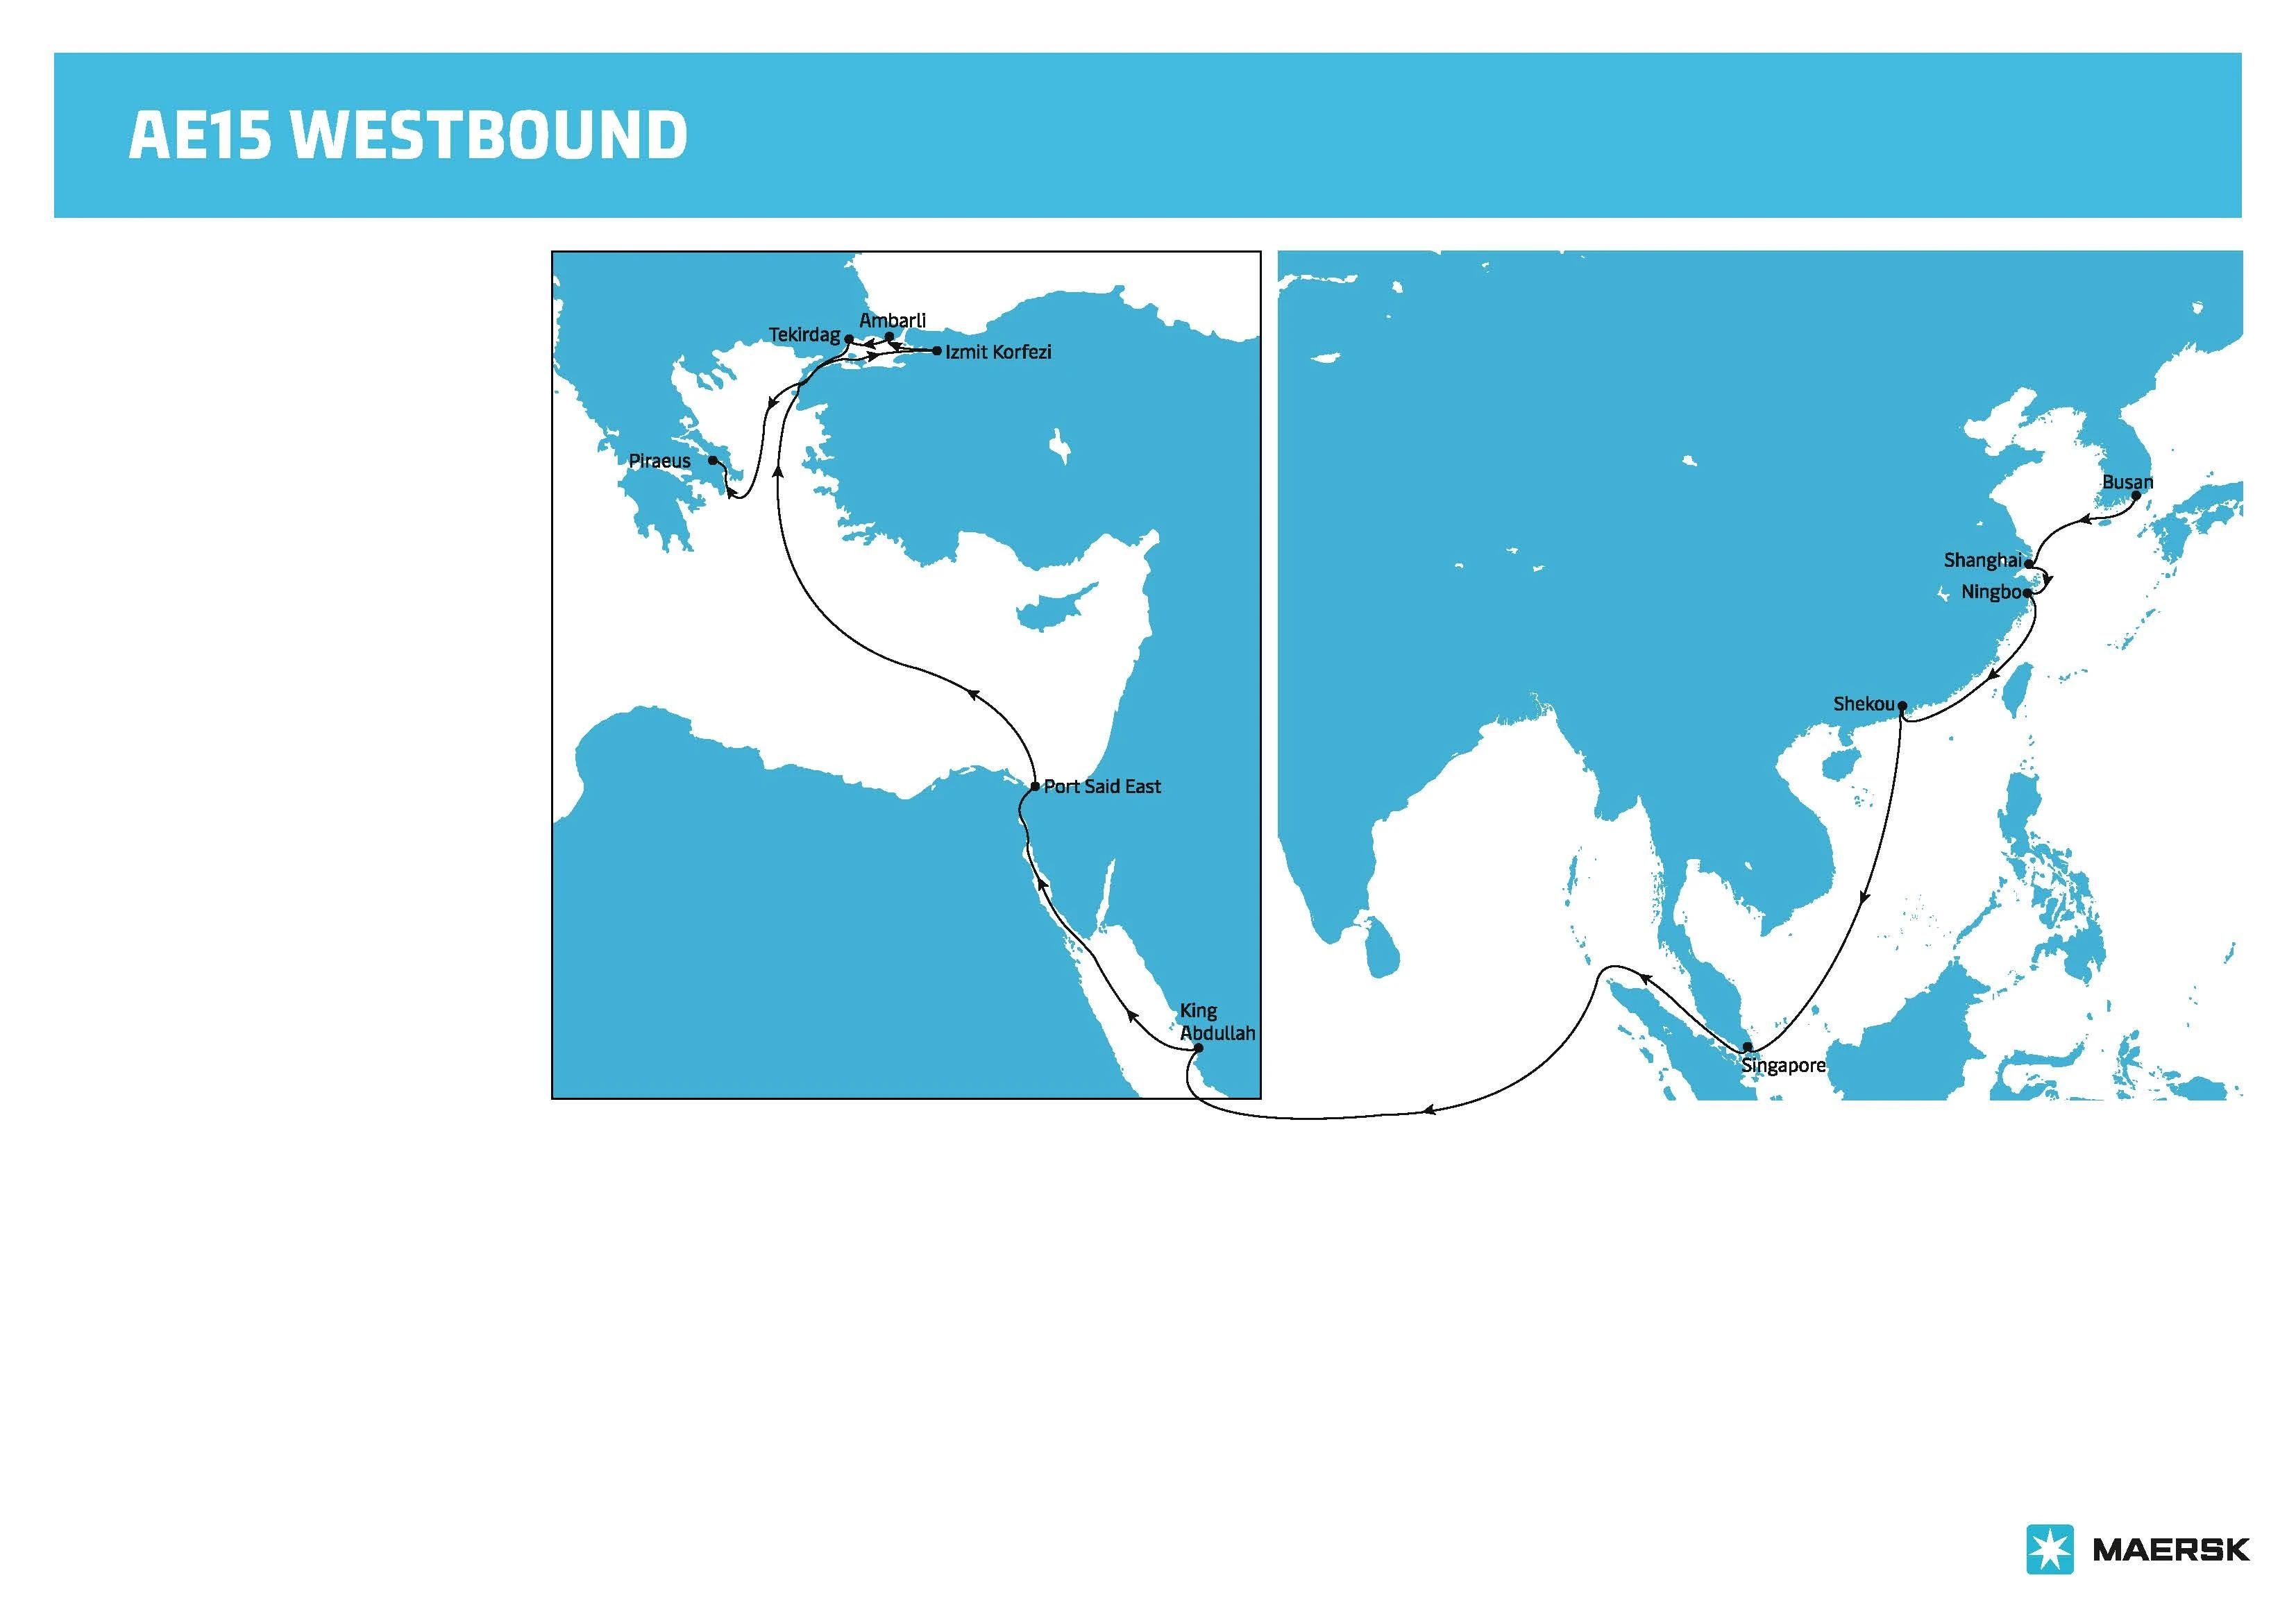 马士基优化跨太平洋航线及欧洲航线网络，进一步提升准班率